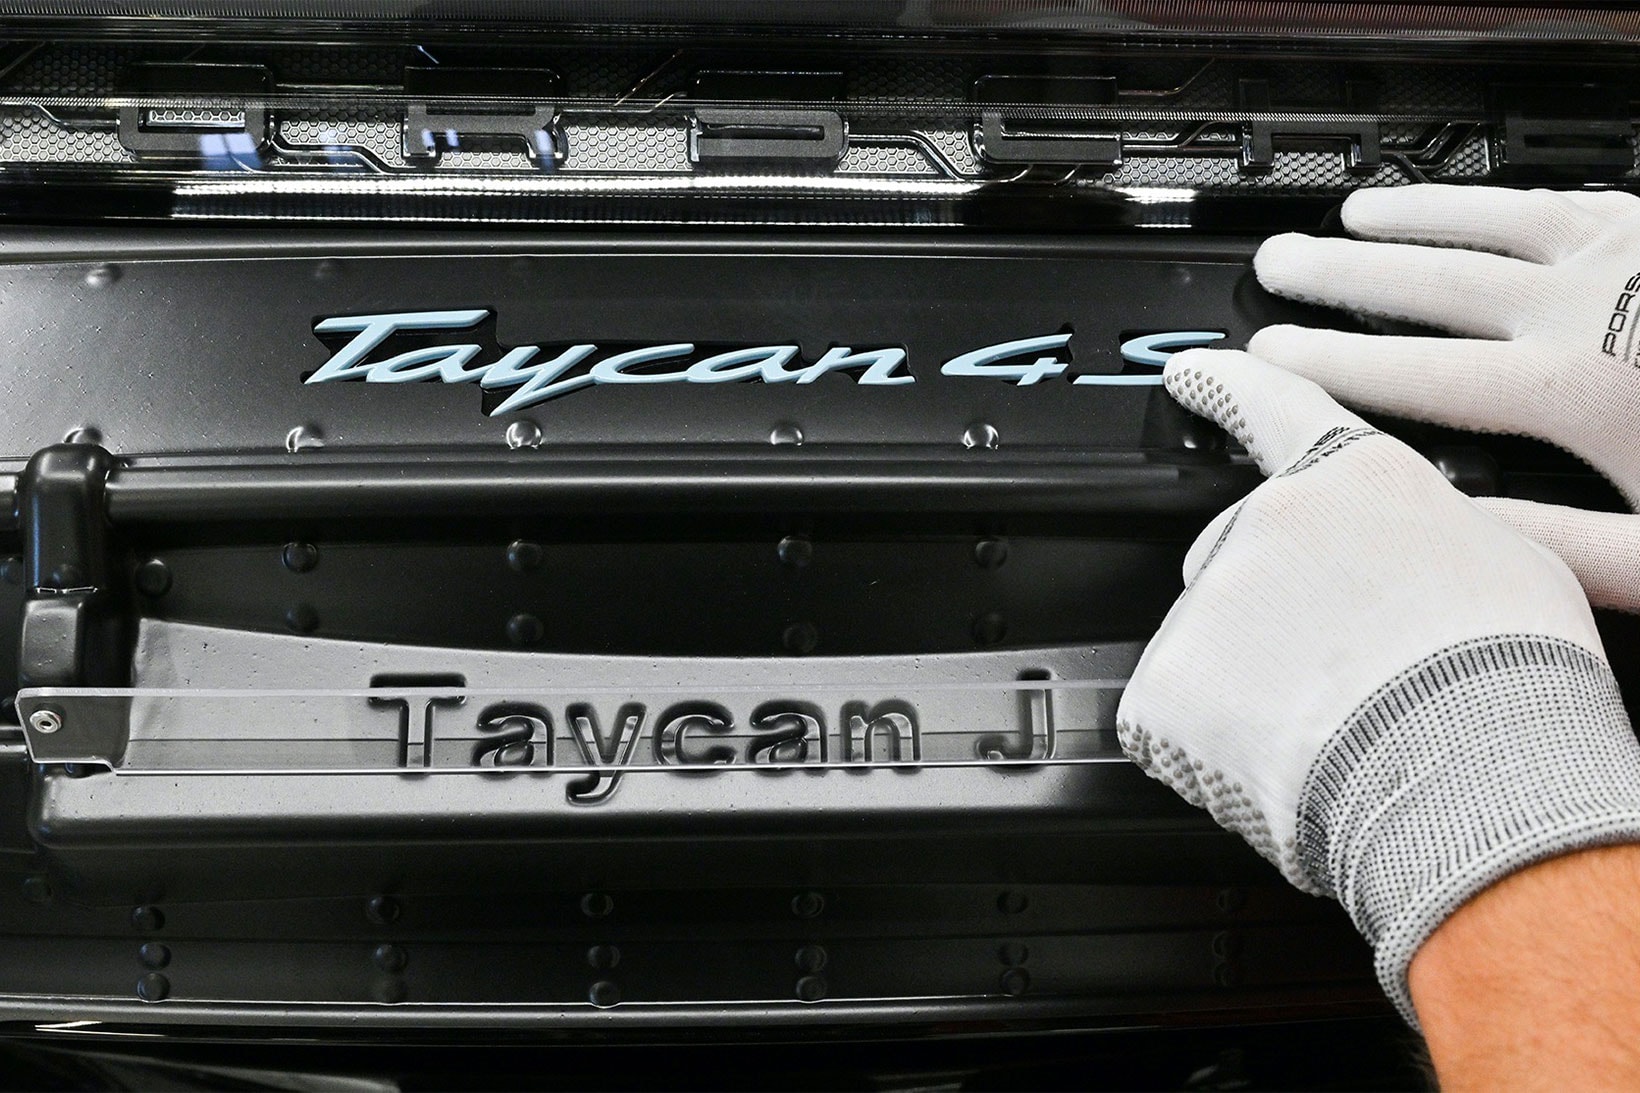 Jennie BLACKPINK Porsche Car Collaboration Taycan 4S Cross Turismo Ruby Jane Sonderwunsch Images Info